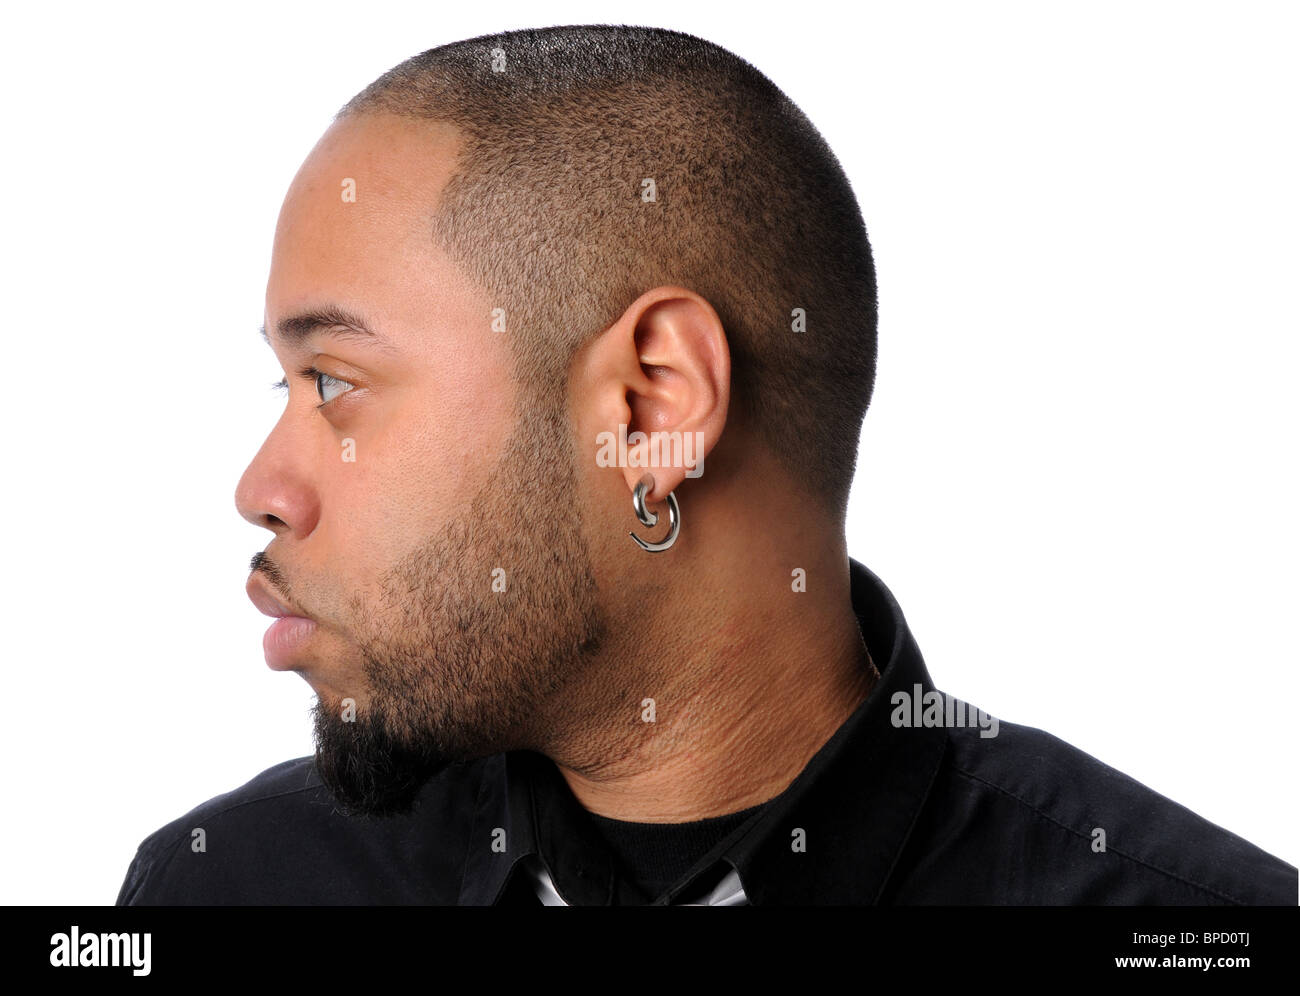 Portrait de profil de African American man isolé sur fond blanc Banque D'Images